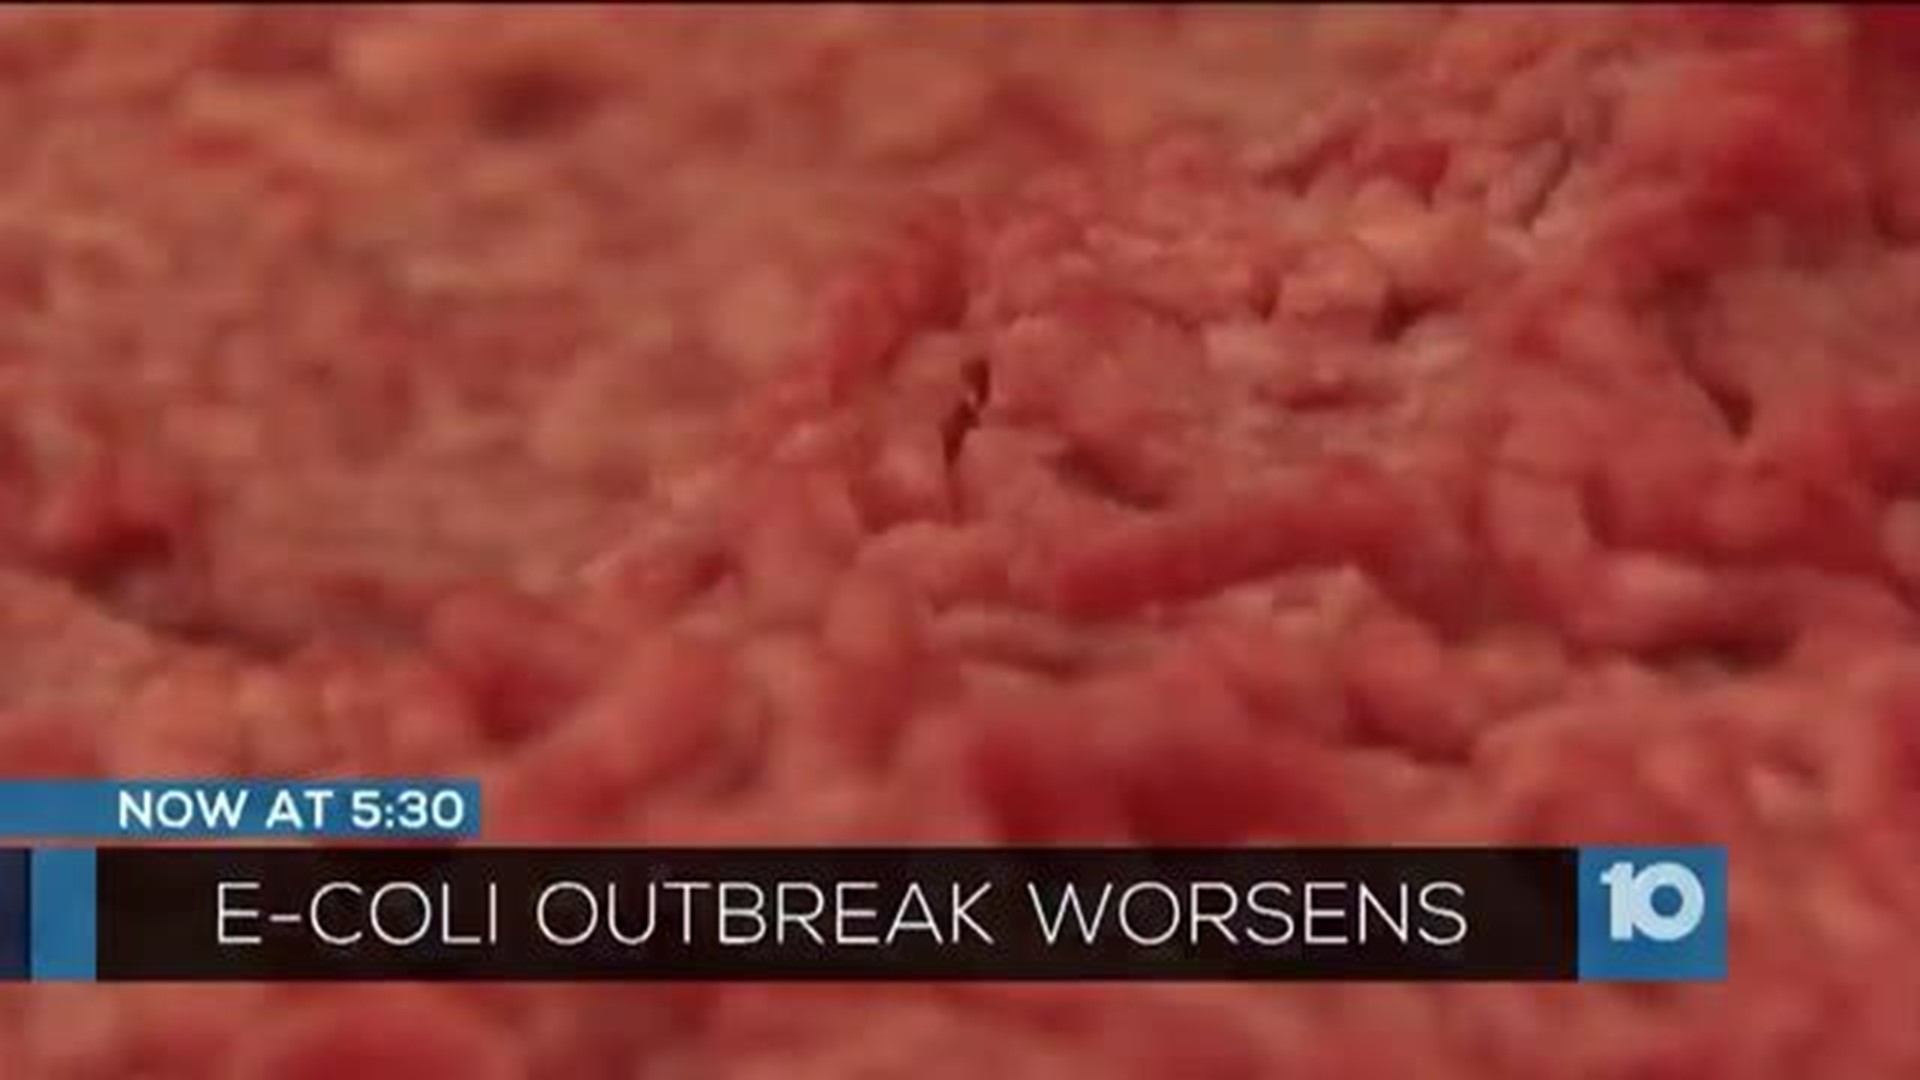 12 Ohioans sickened in latest e. coli outbreak scare